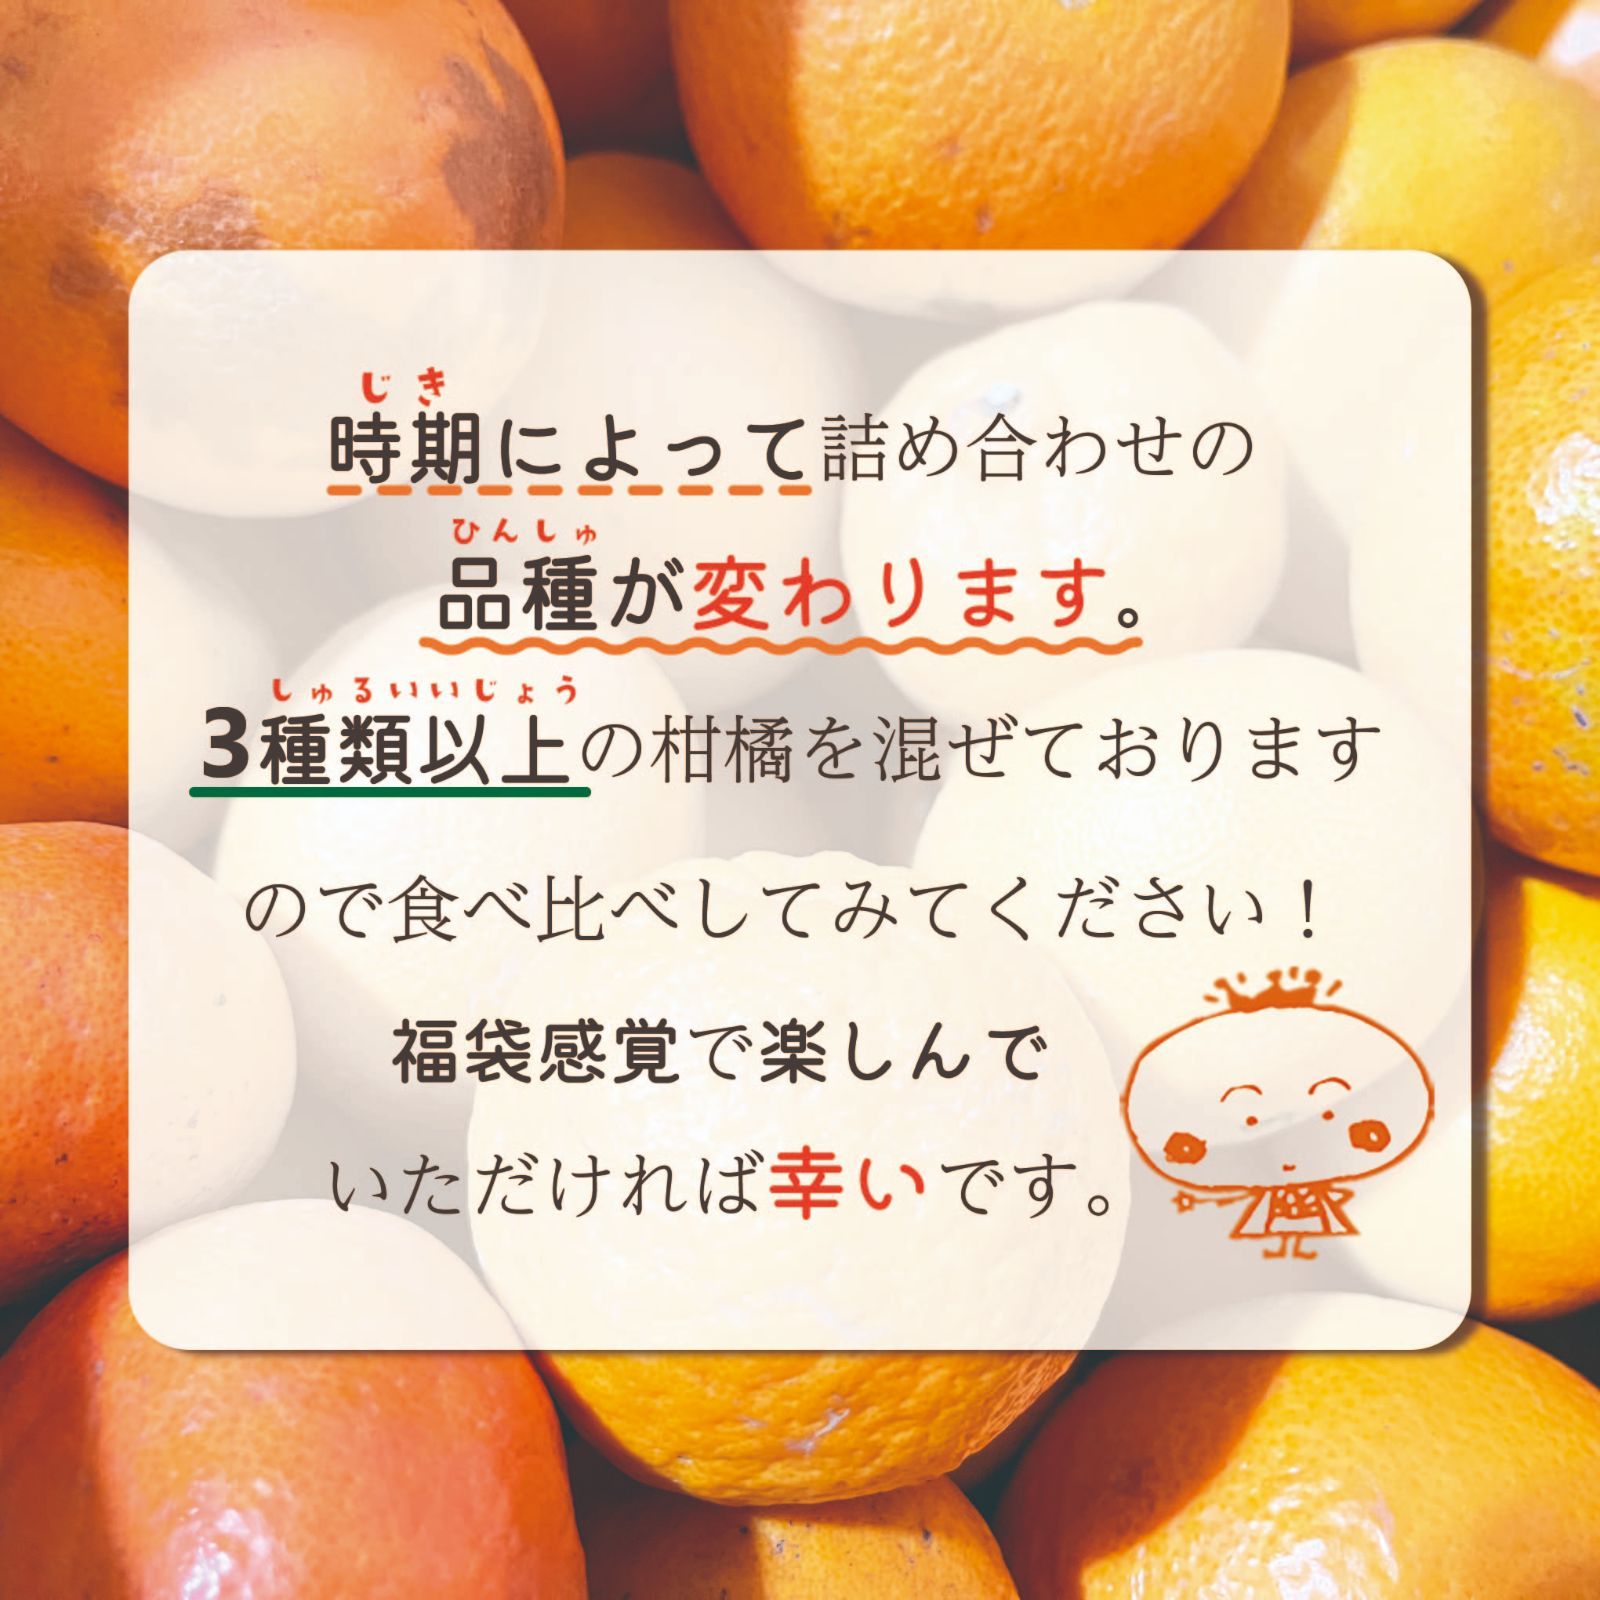 【超お買い得!】旬の柑橘 詰め合わせ 10kg補償有-1